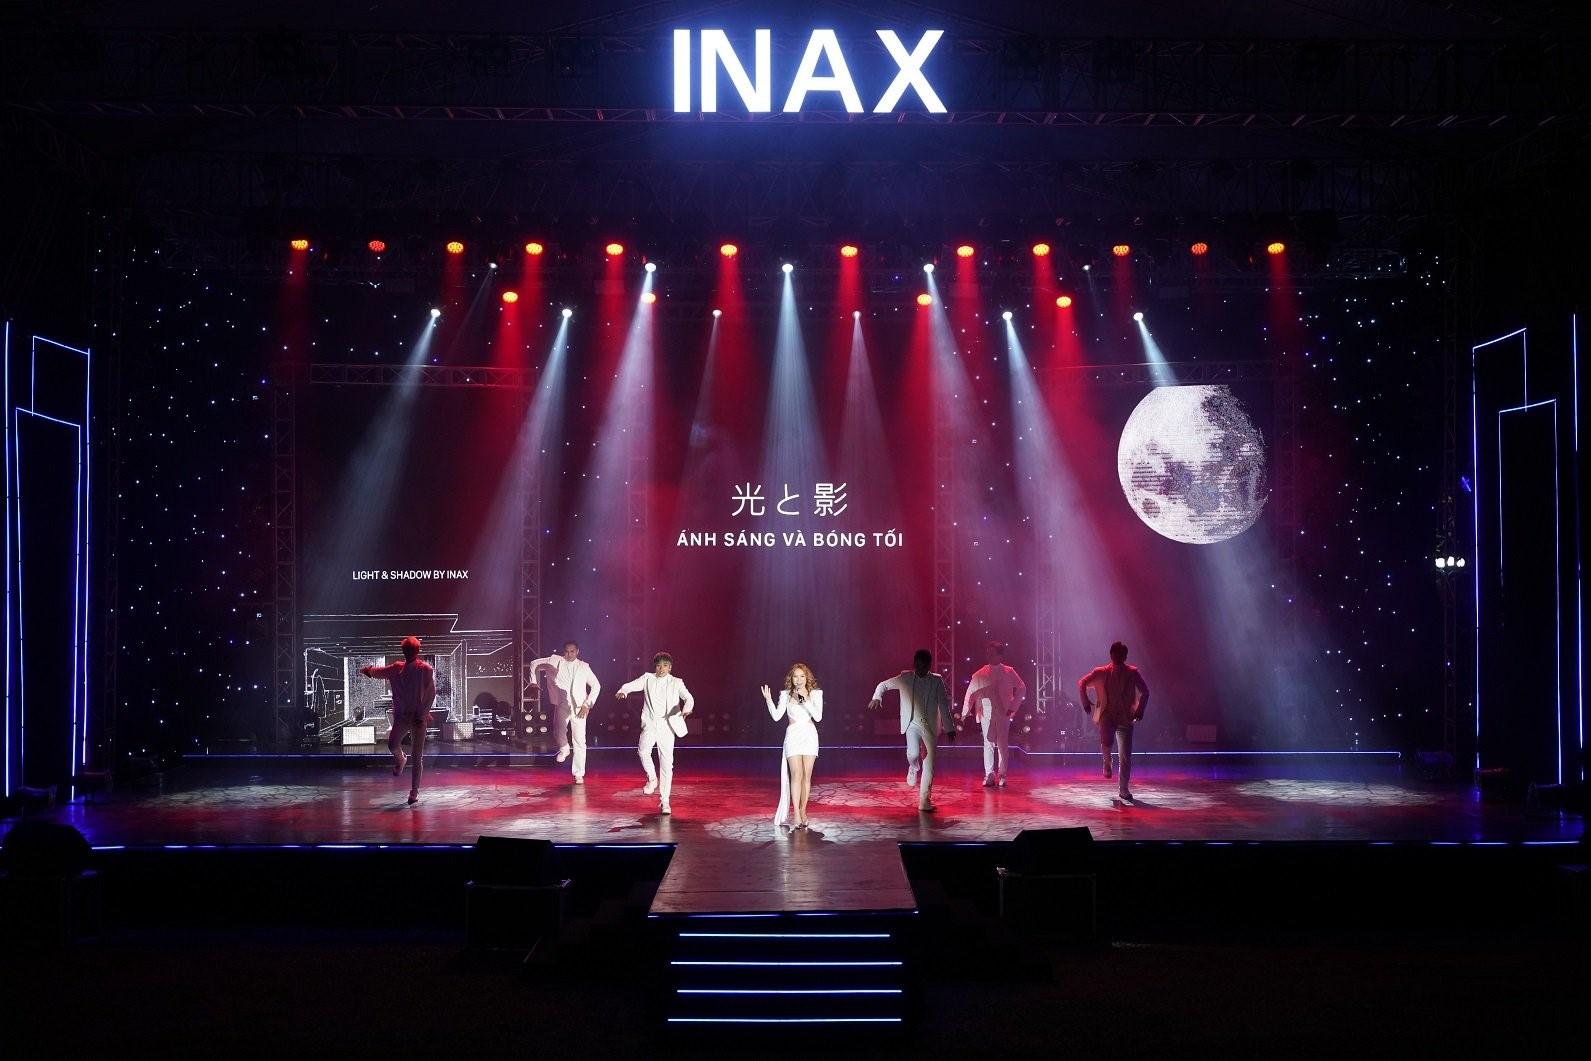 Bằng Kiều, Mỹ Tâm hội ngộ đêm nhạc ‘INAX - Ánh sáng và bóng tối’-3